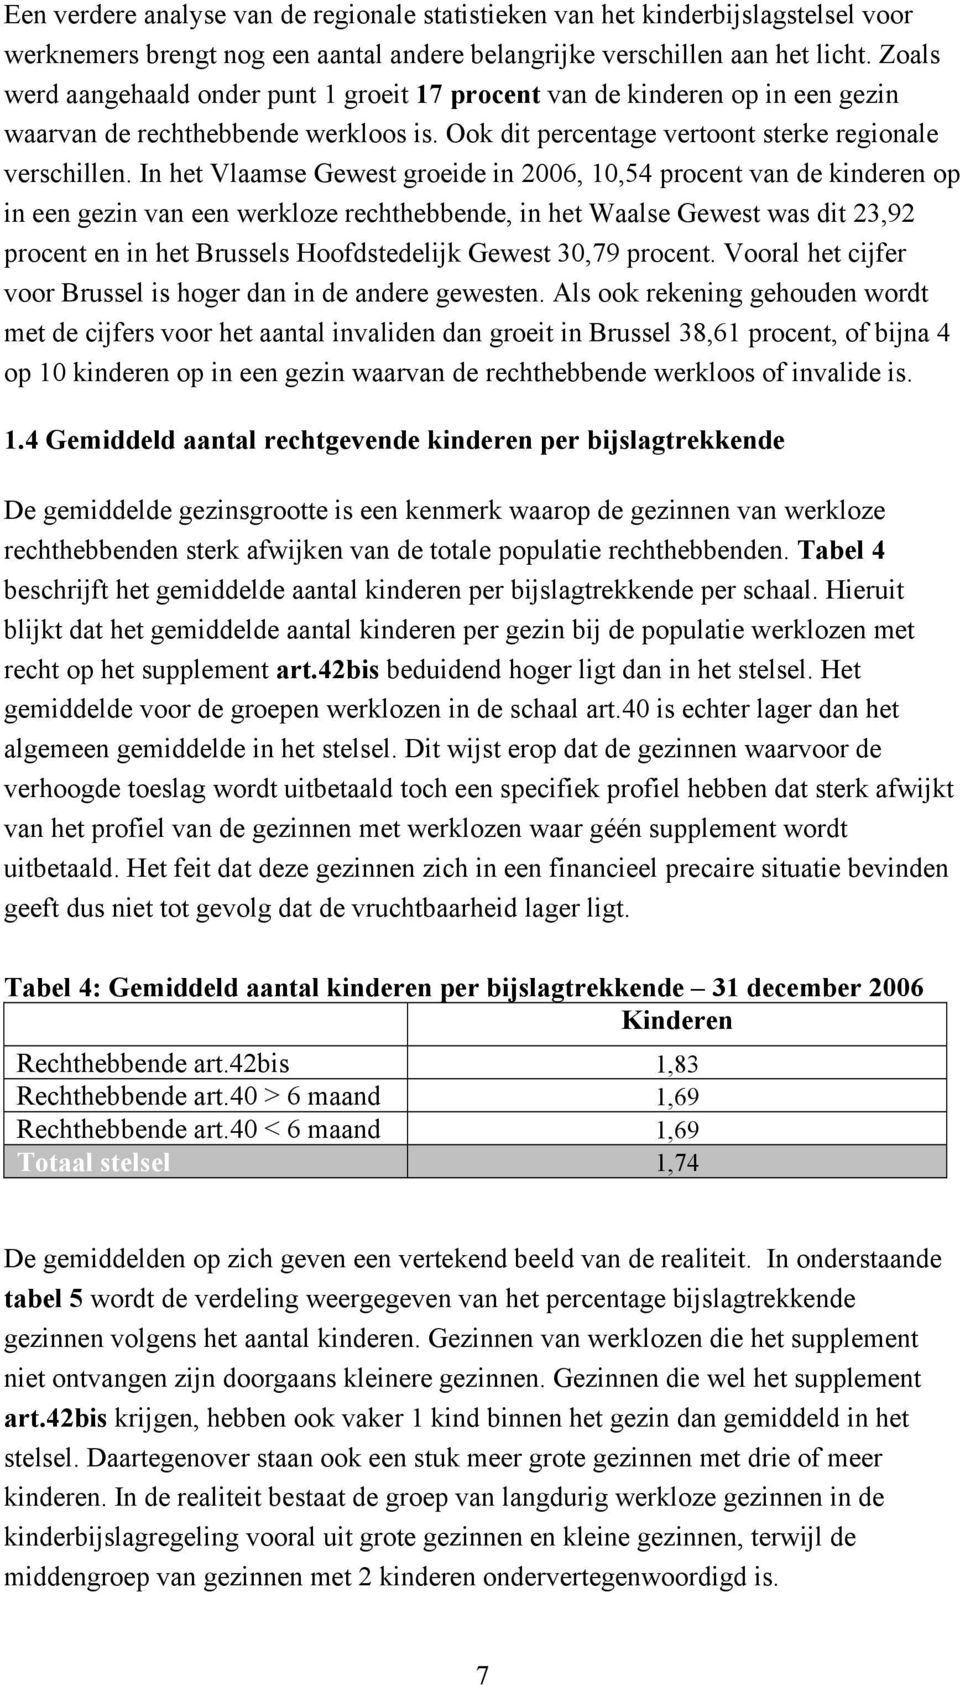 In het Vlaamse Gewest groeide in 2006, 10,54 procent van de kinderen op in een gezin van een werkloze rechthebbende, in het Waalse Gewest was dit 23,92 procent en in het Brussels Hoofdstedelijk